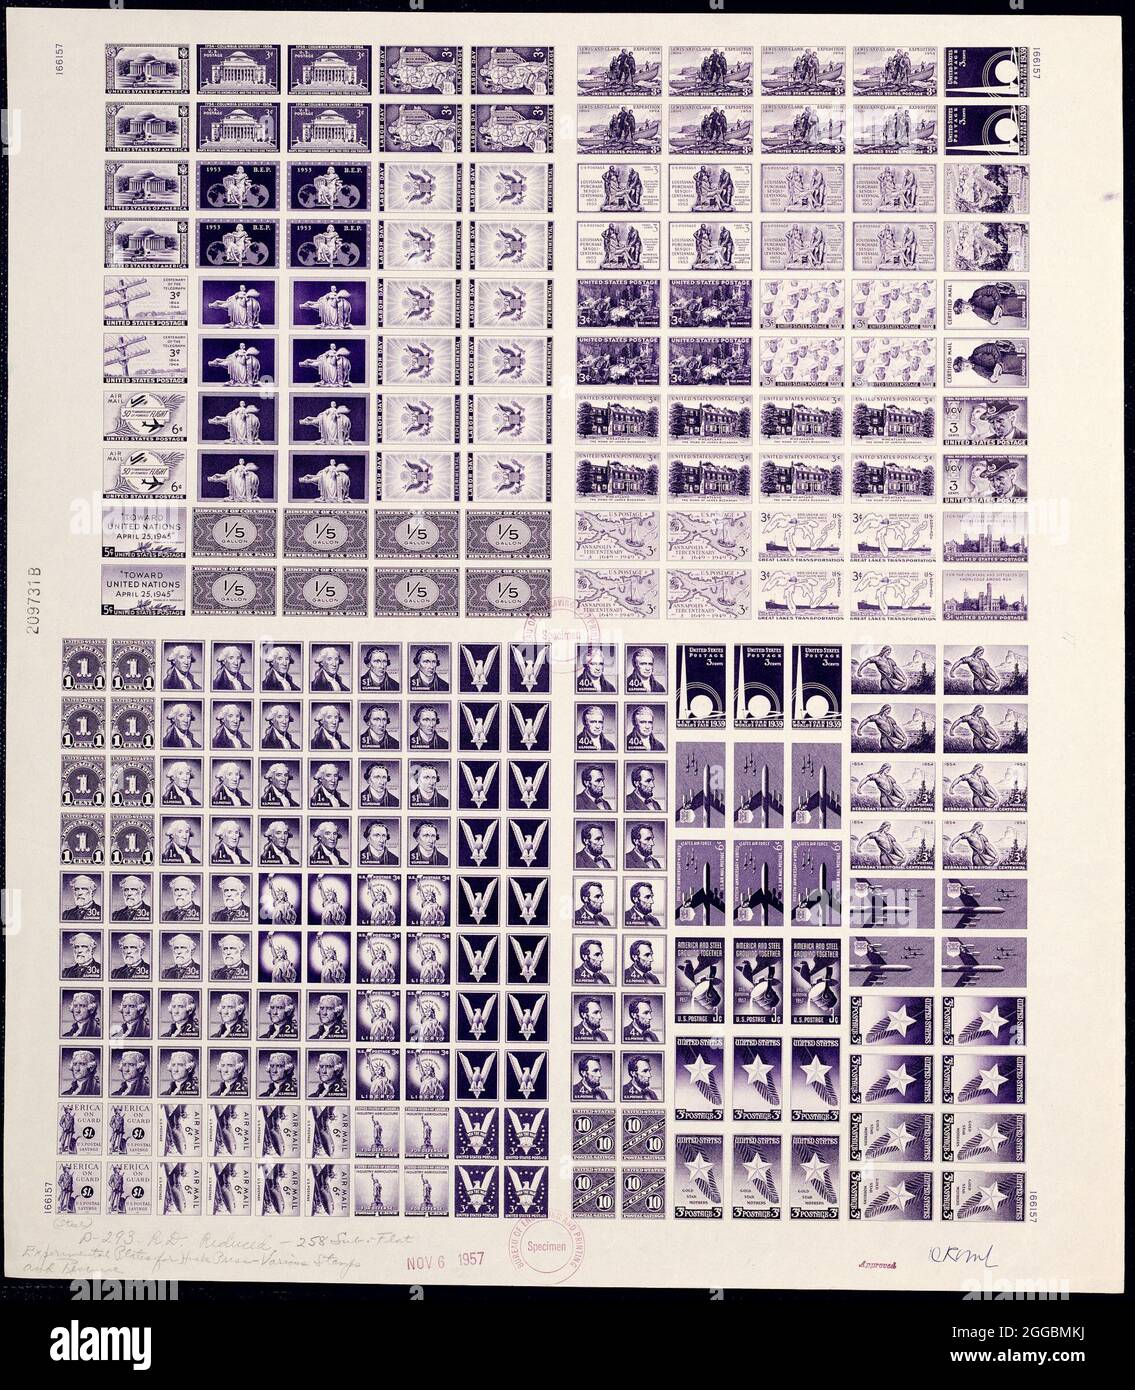 Épreuve de plaque expérimentale de Huck Press, 1957. Au cours des années 1950 et 1960, le Bureau d'gravure et d'impression a adopté des technologies d'impression de pointe qui ont transformé la production de timbres. Les nouvelles presses Giori (1956) et Huck 9-Color (1966) ont imprimé des timbres multicolores accrocheurs qui célèbrent la diversité, la culture populaire, les arts et le programme spatial.;a l'occasion de tester la presse Huck-Cottrell, les employés du Bureau ont produit des plaques d'impression expérimentales à partir de matrices originales datant des années 1930. Ils ont imprimé cette épreuve à partir de l'une des plaques. Banque D'Images